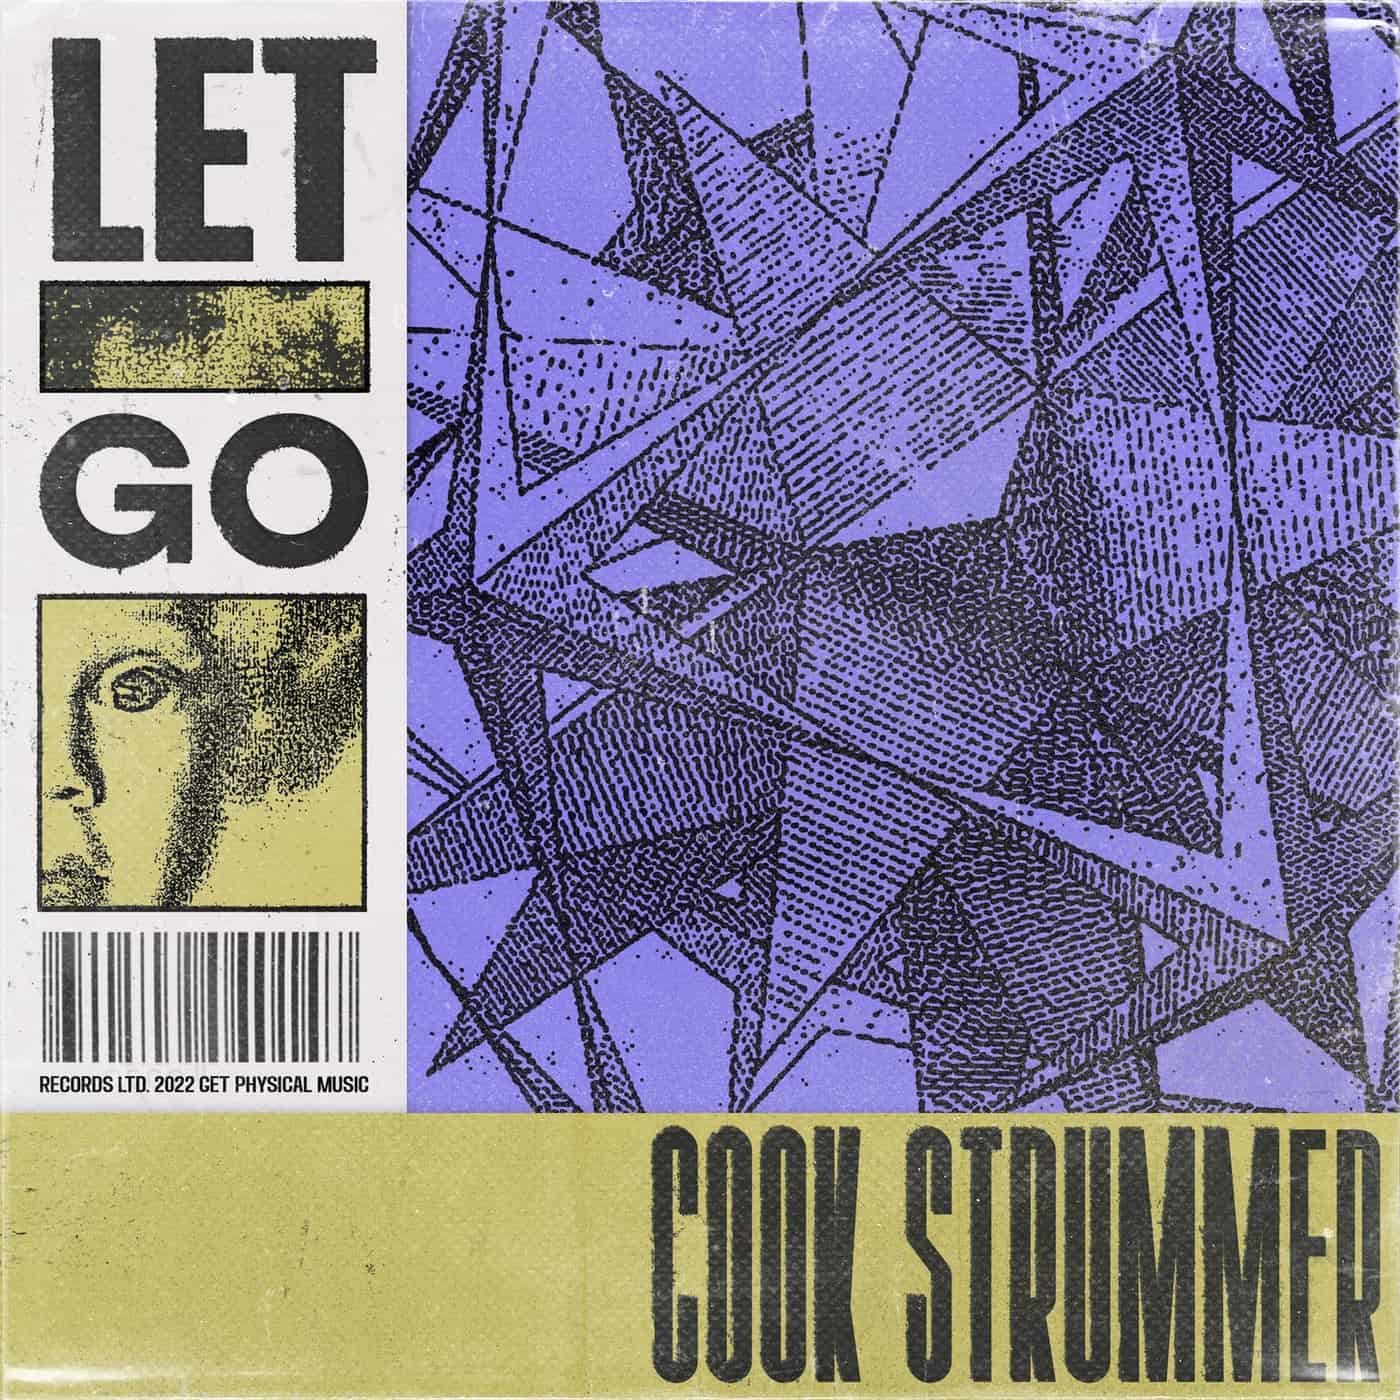 Download Cook Strummer - Let Go EP on Electrobuzz